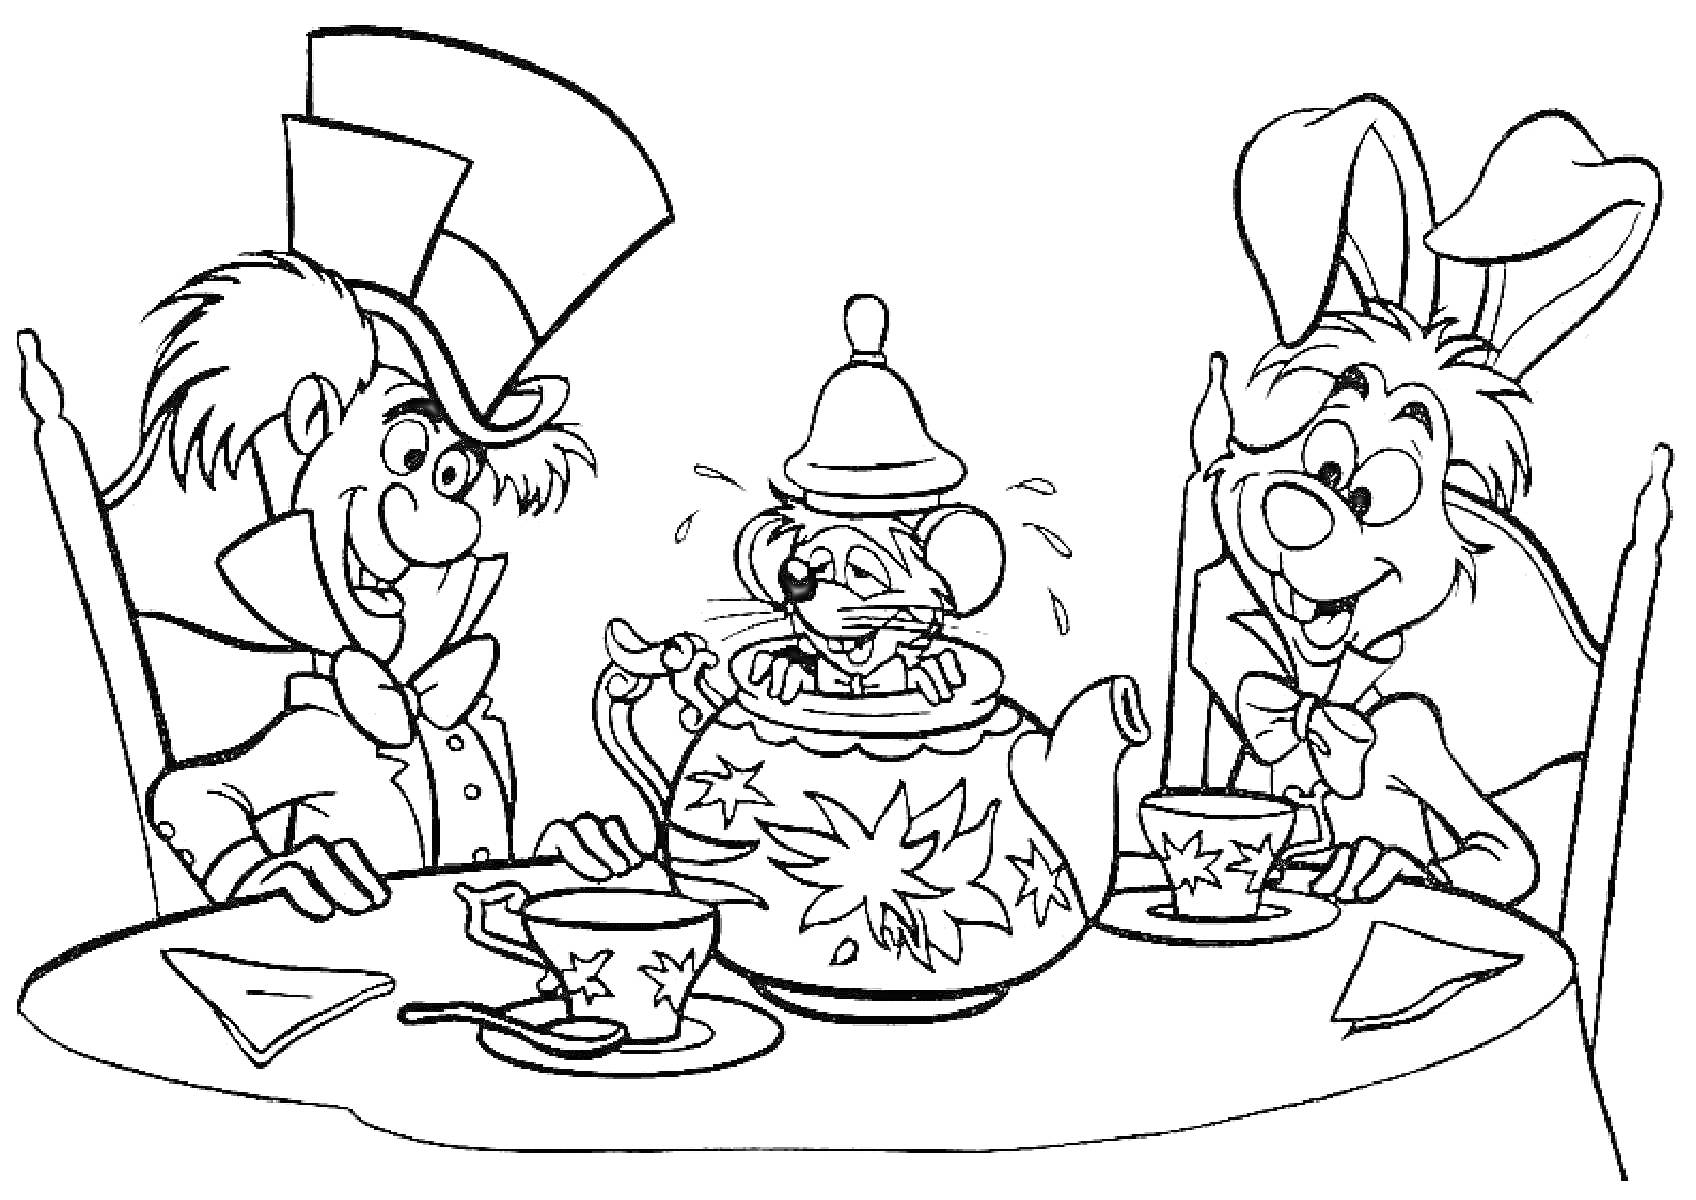 Раскраска Чаепитие с Безумным Шляпником, Соней и Белым Кроликом, сидящими за столом с чайником и чашками